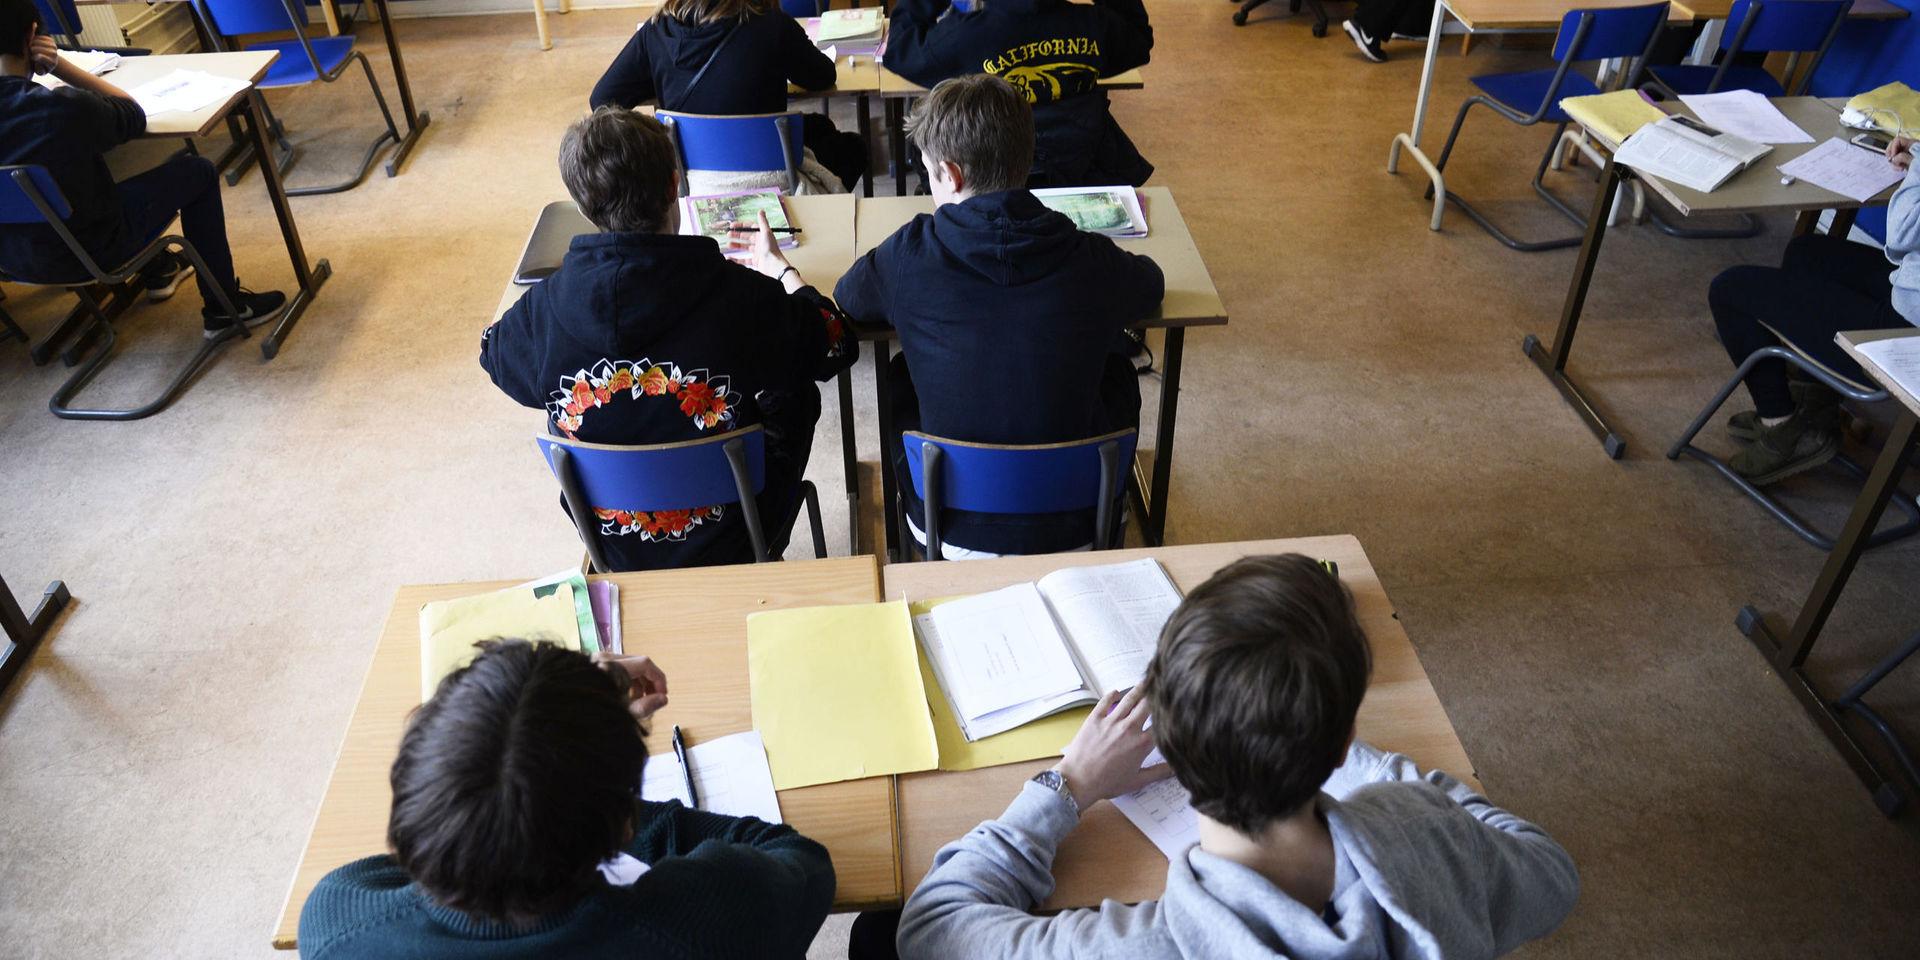 Tuff arbetsmiljö för lärarna sänker Göteborg på skolrankingen.